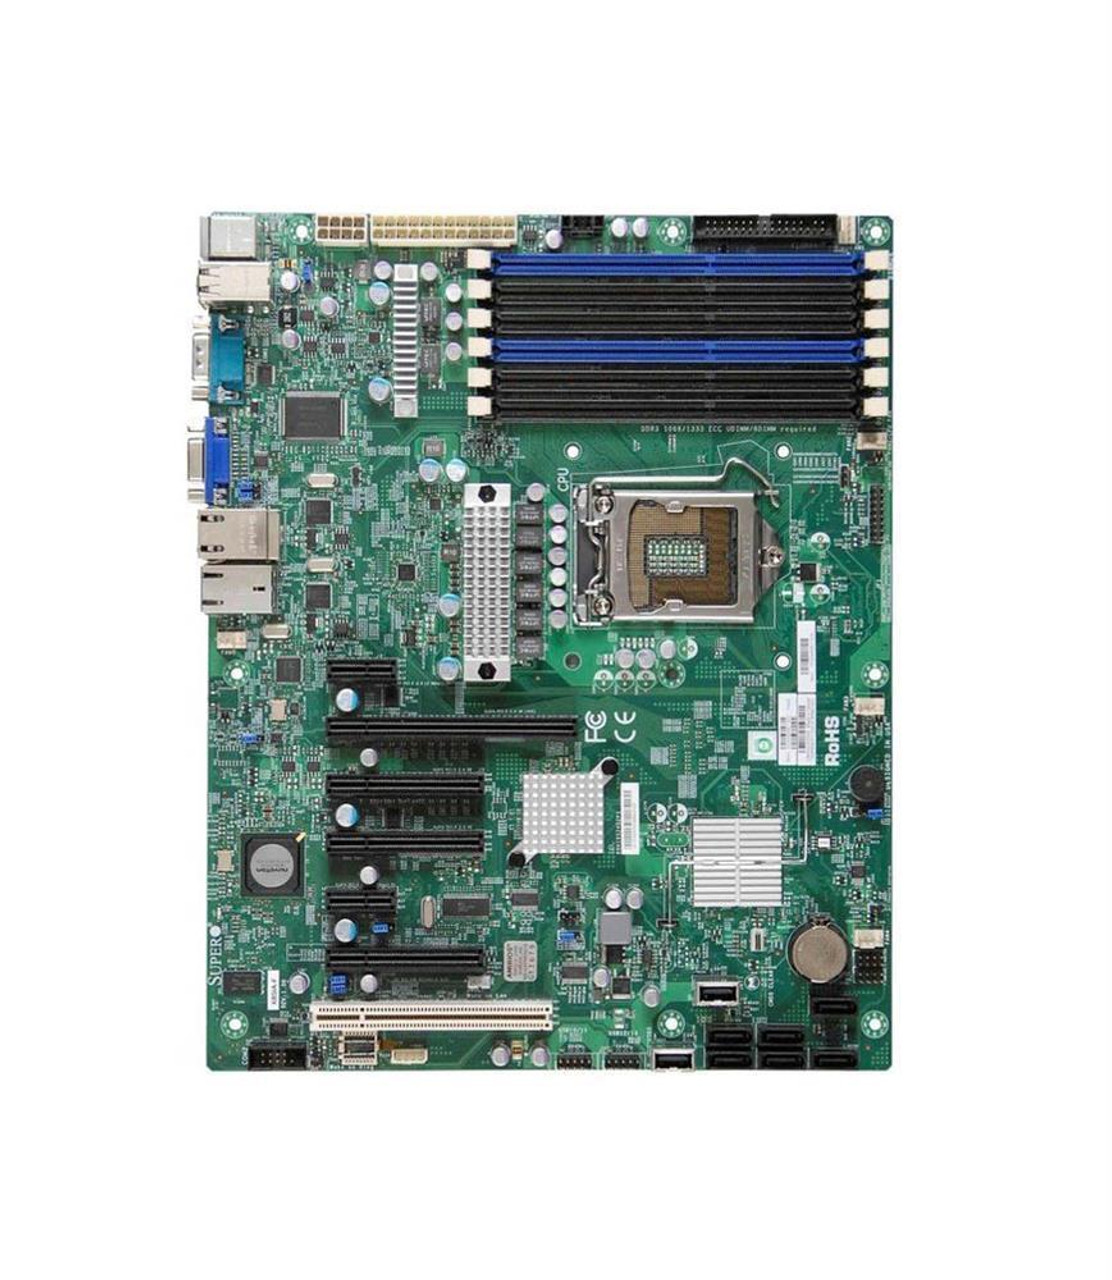 X8SIA-F-B SuperMicro X8SIA-F Socket LGA1156 Intel 3420 Chipset ATX Server Motherboard (Refurbished)